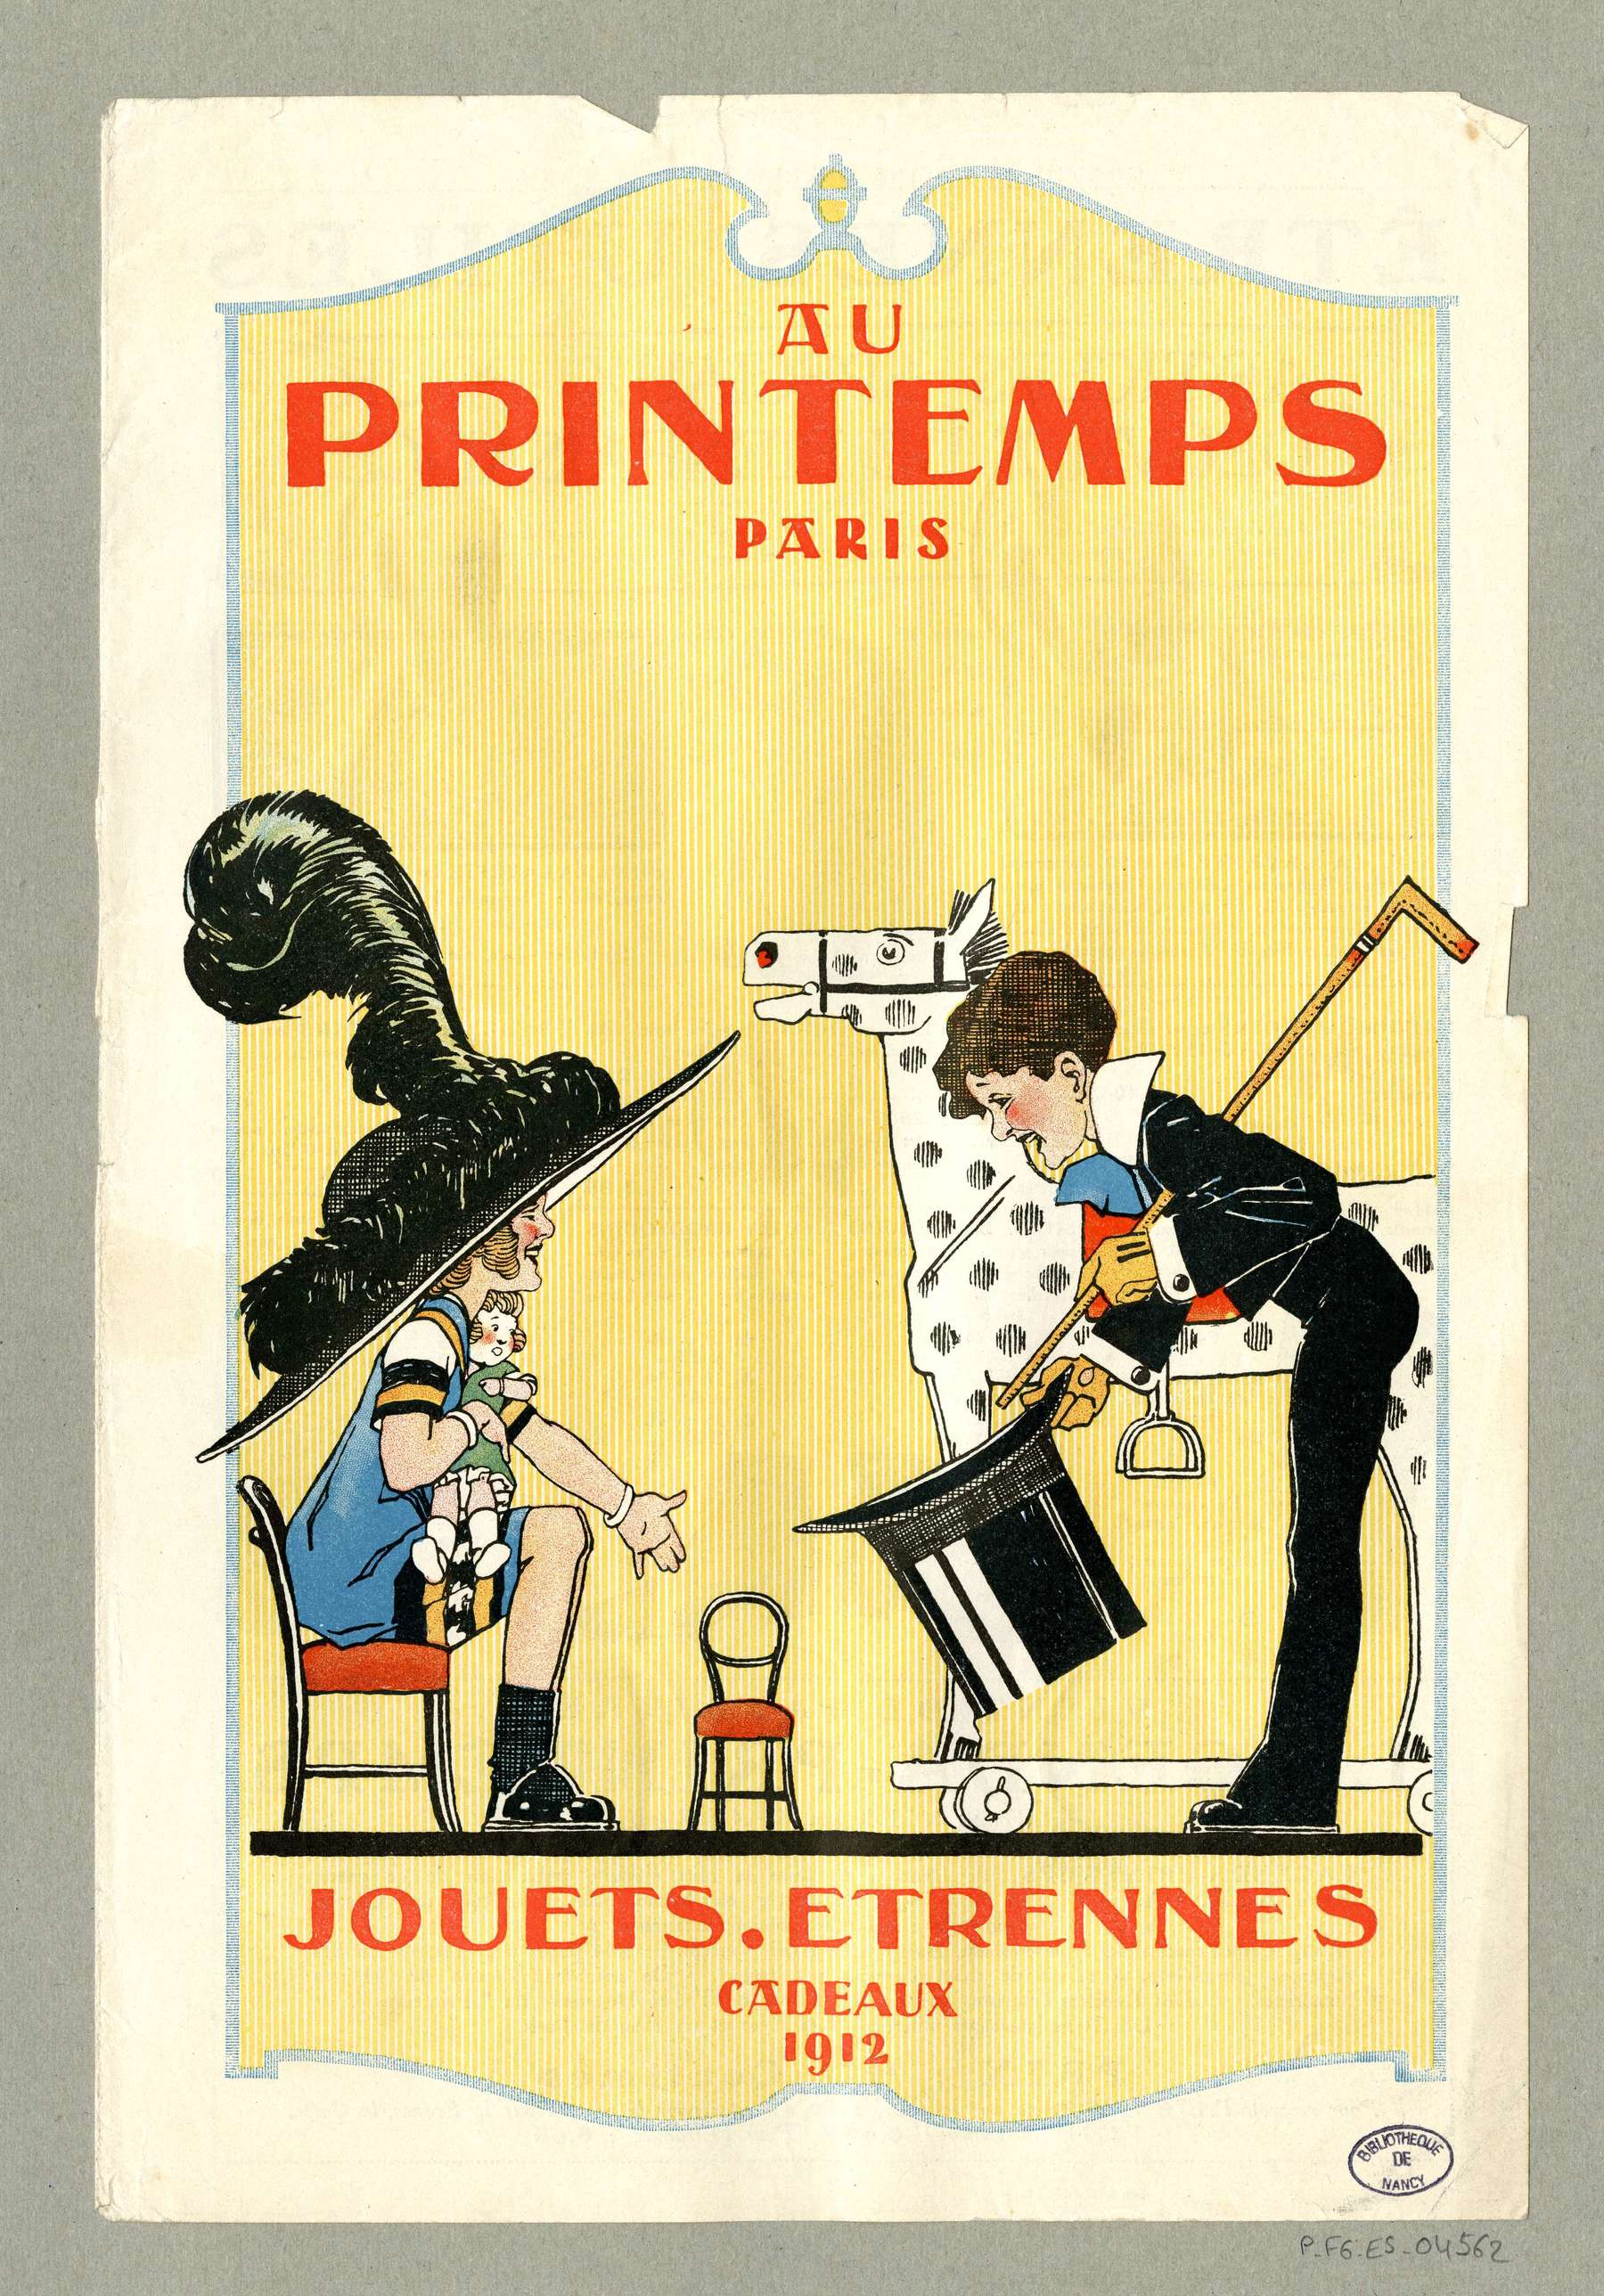 Contenu du "Au Printemps" Paris 1912